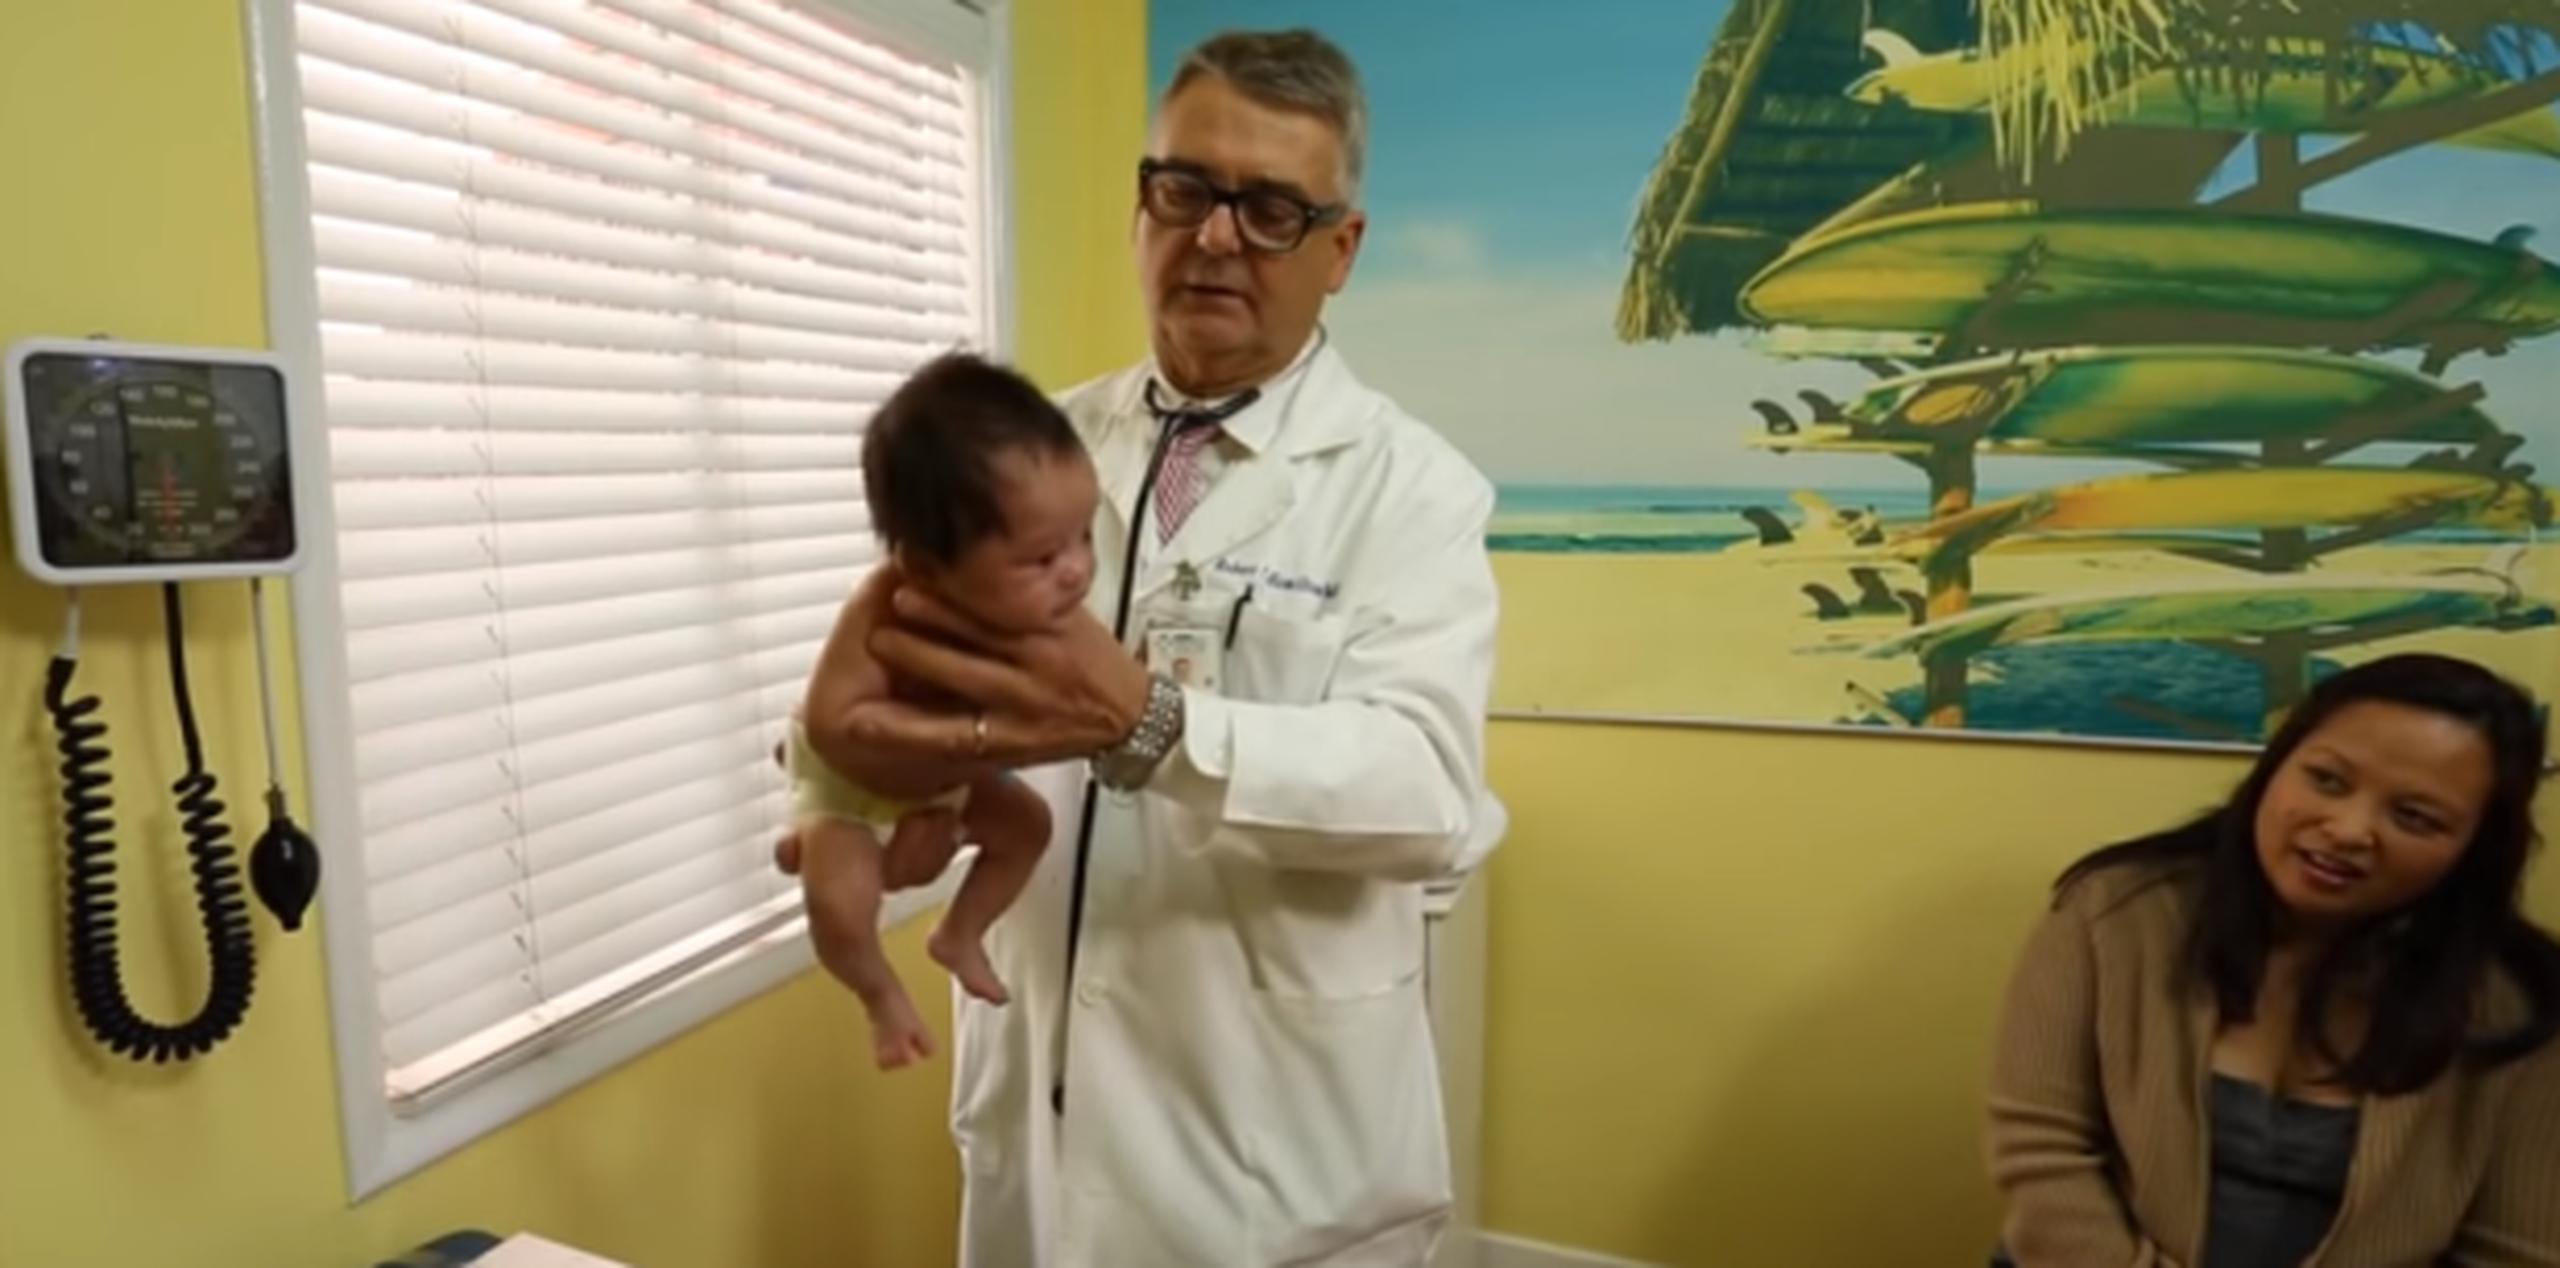 Así mismo: hasta la mamá se quedó impresionada al ver la rapidez con la que "Dr. Bob" calmaba a su pequeño paciente. (YouTube)